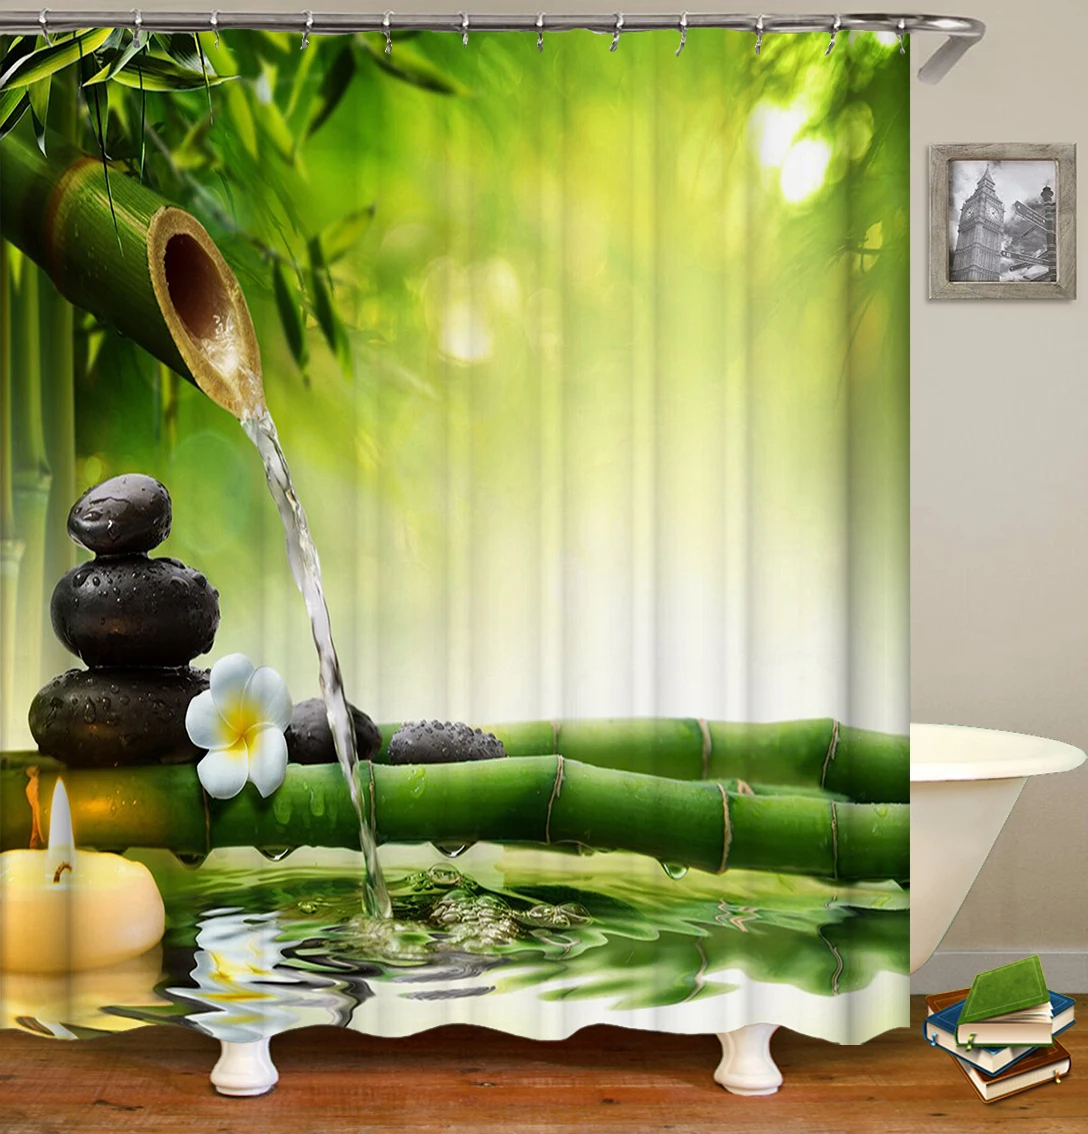 Тропическая занавеска для душа s зеленая занавеска для душа для ванной ткань занавеска для душа s для водонепроницаемый занавес для Ванной Душа